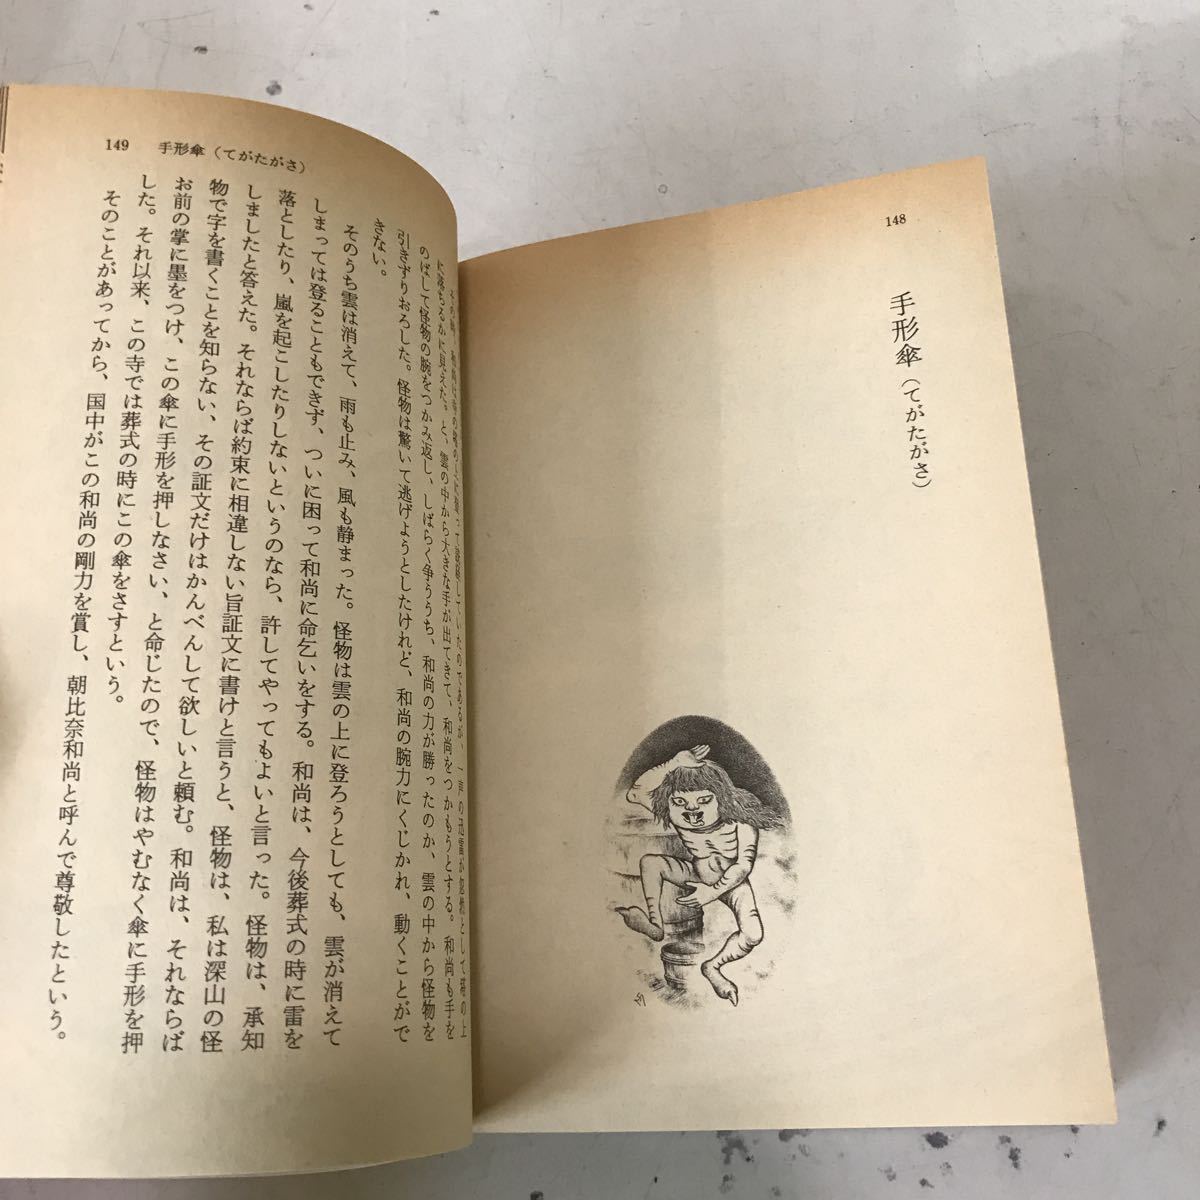 221221*Q11* вода дерево .... .. библиотека 4 шт. комплект Showa 59 год первая версия выпуск Kawade книжный магазин история с привидениями 